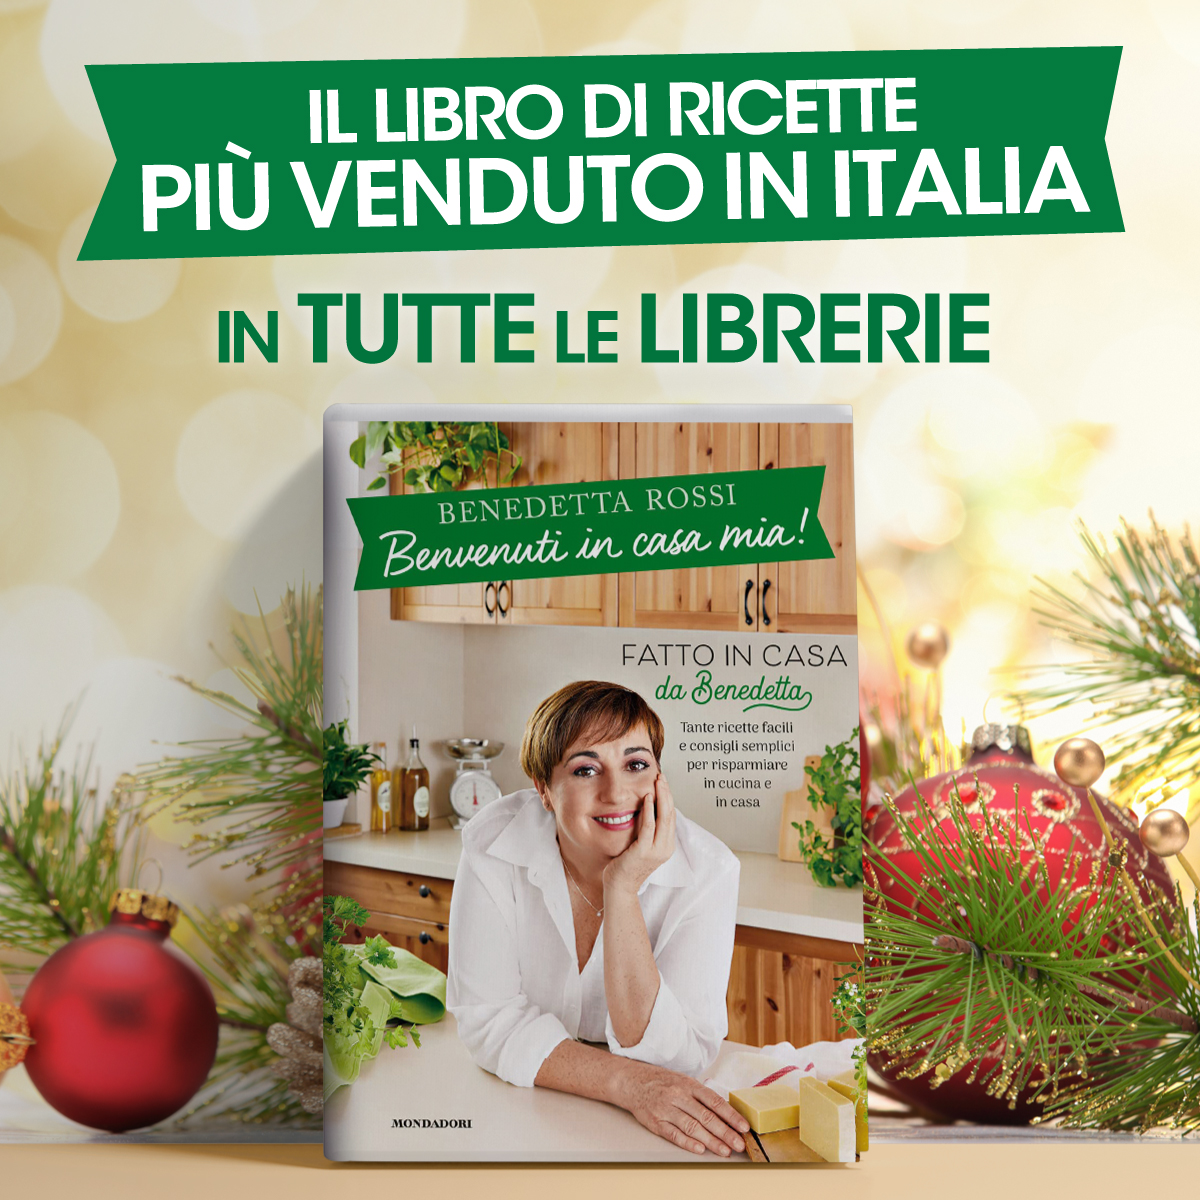 Benedetta Rossi on X: Benvenuti a casa mia il libro di ricette più  venduto in Italia disponibile in tutte le librerie!    / X